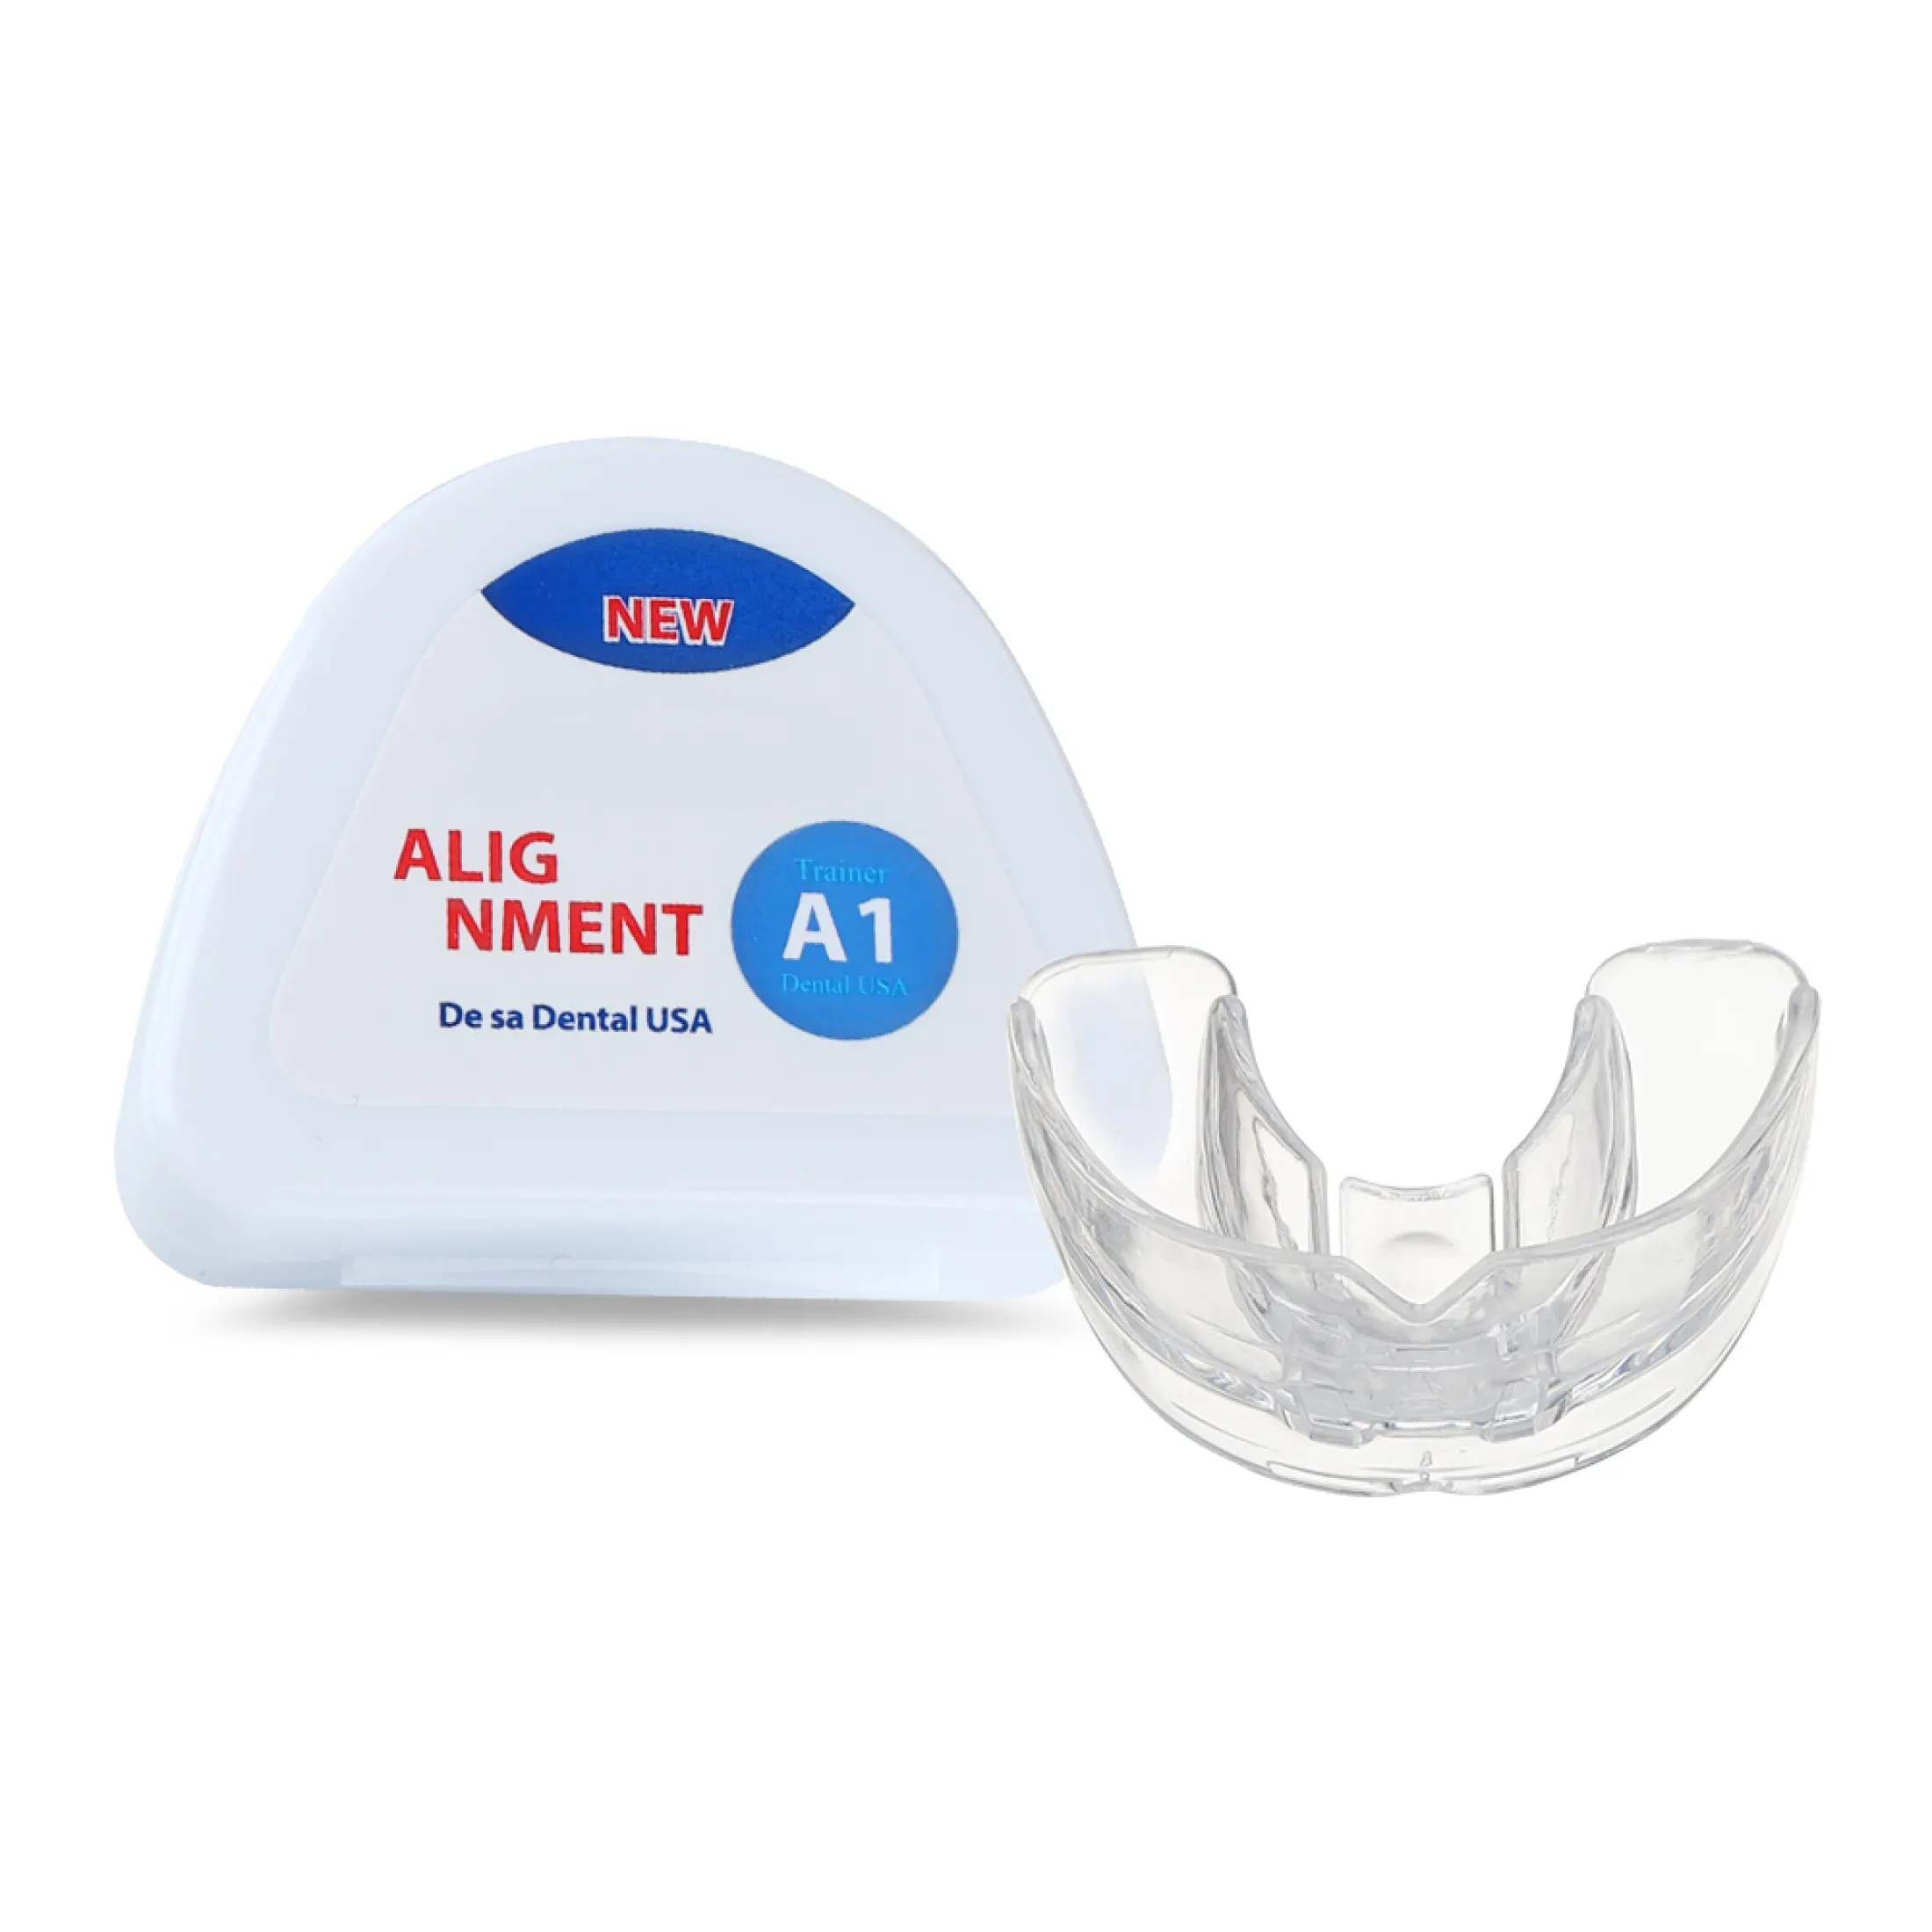 hailicare bộ niềng răng chỉnh nha nha khoa dụng cụ chỉnh răng bằng silicon 3 giai đoạn dụng cụ giữ răng dụng cụ giữ răng dụng cụ chỉnh răng dụng cụ duỗi răng cho trẻ em 13